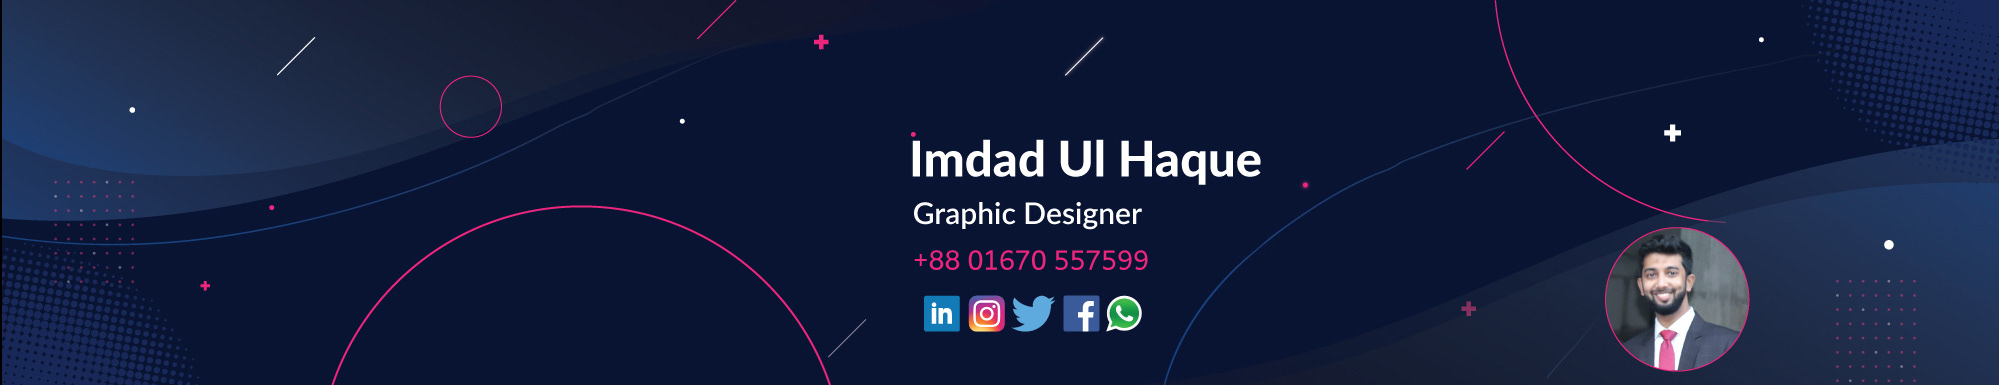 Imdad ul Haque ✪'s profile banner